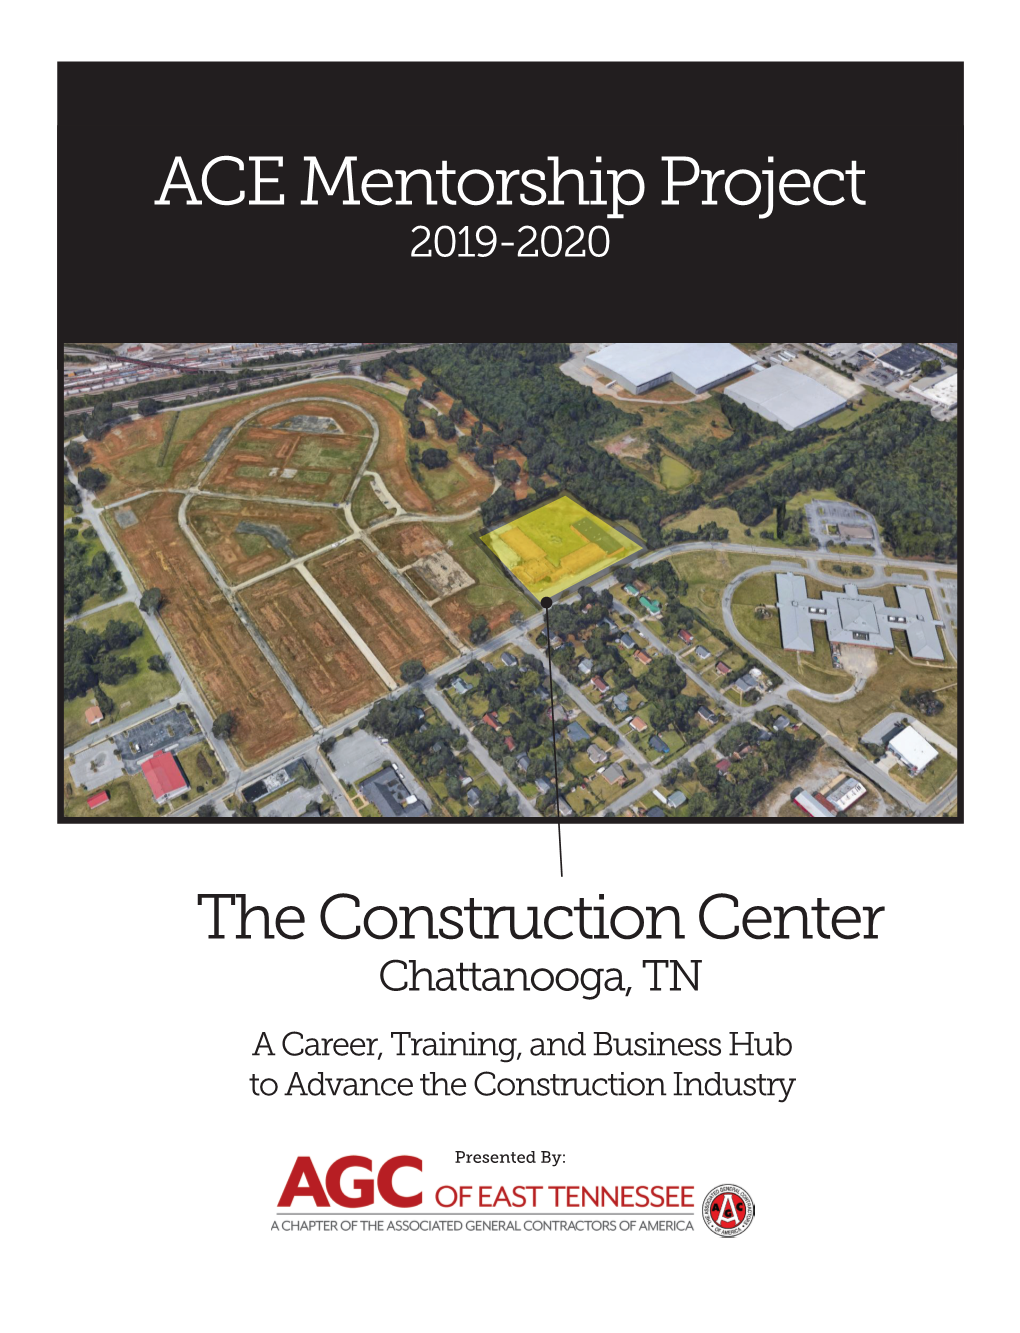 ACE Mentorship Project 2019-2020